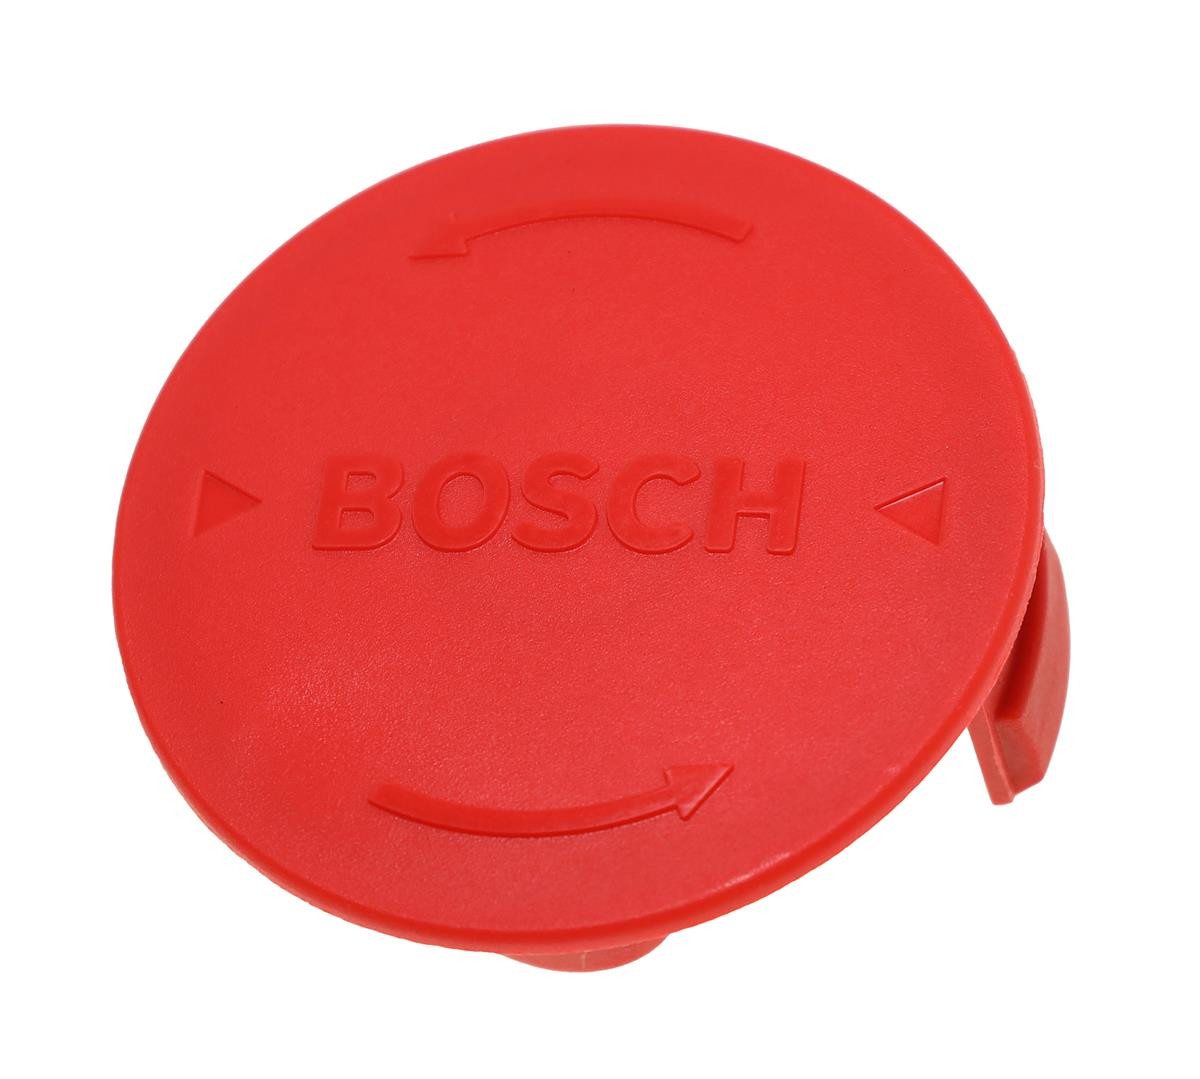 BOSCH Rasentrimmer-Ersatzspule Bosch F016L72438 Abdeckung für ART 30-36 LI 3600H78N00 Rasentrimmer von BOSCH